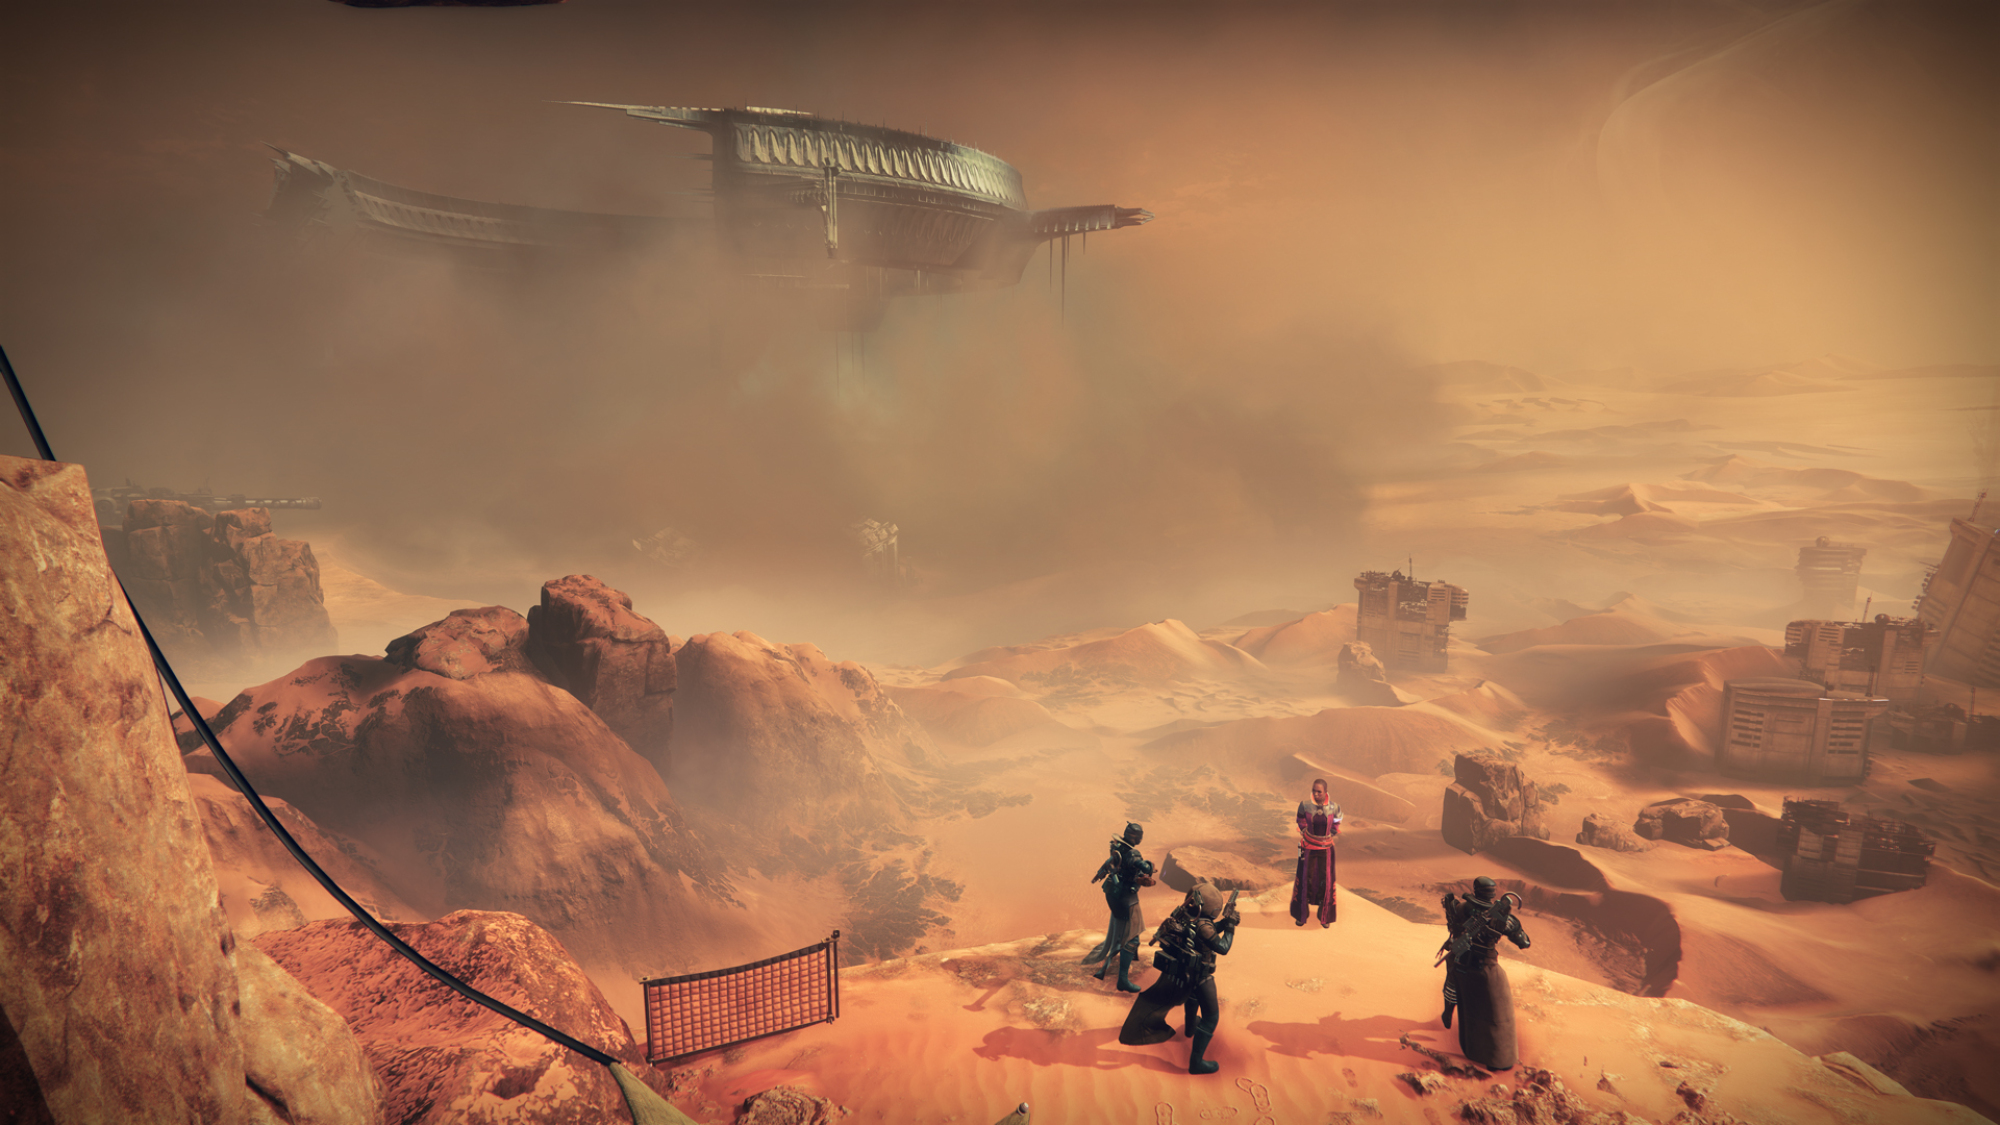 Un paysage désertique sur la planète Mars.  Au premier plan, un petit groupe de personnes se tient sur un plateau, regardant au loin où un énorme vaisseau spatial en forme de cercle est suspendu dans le ciel.